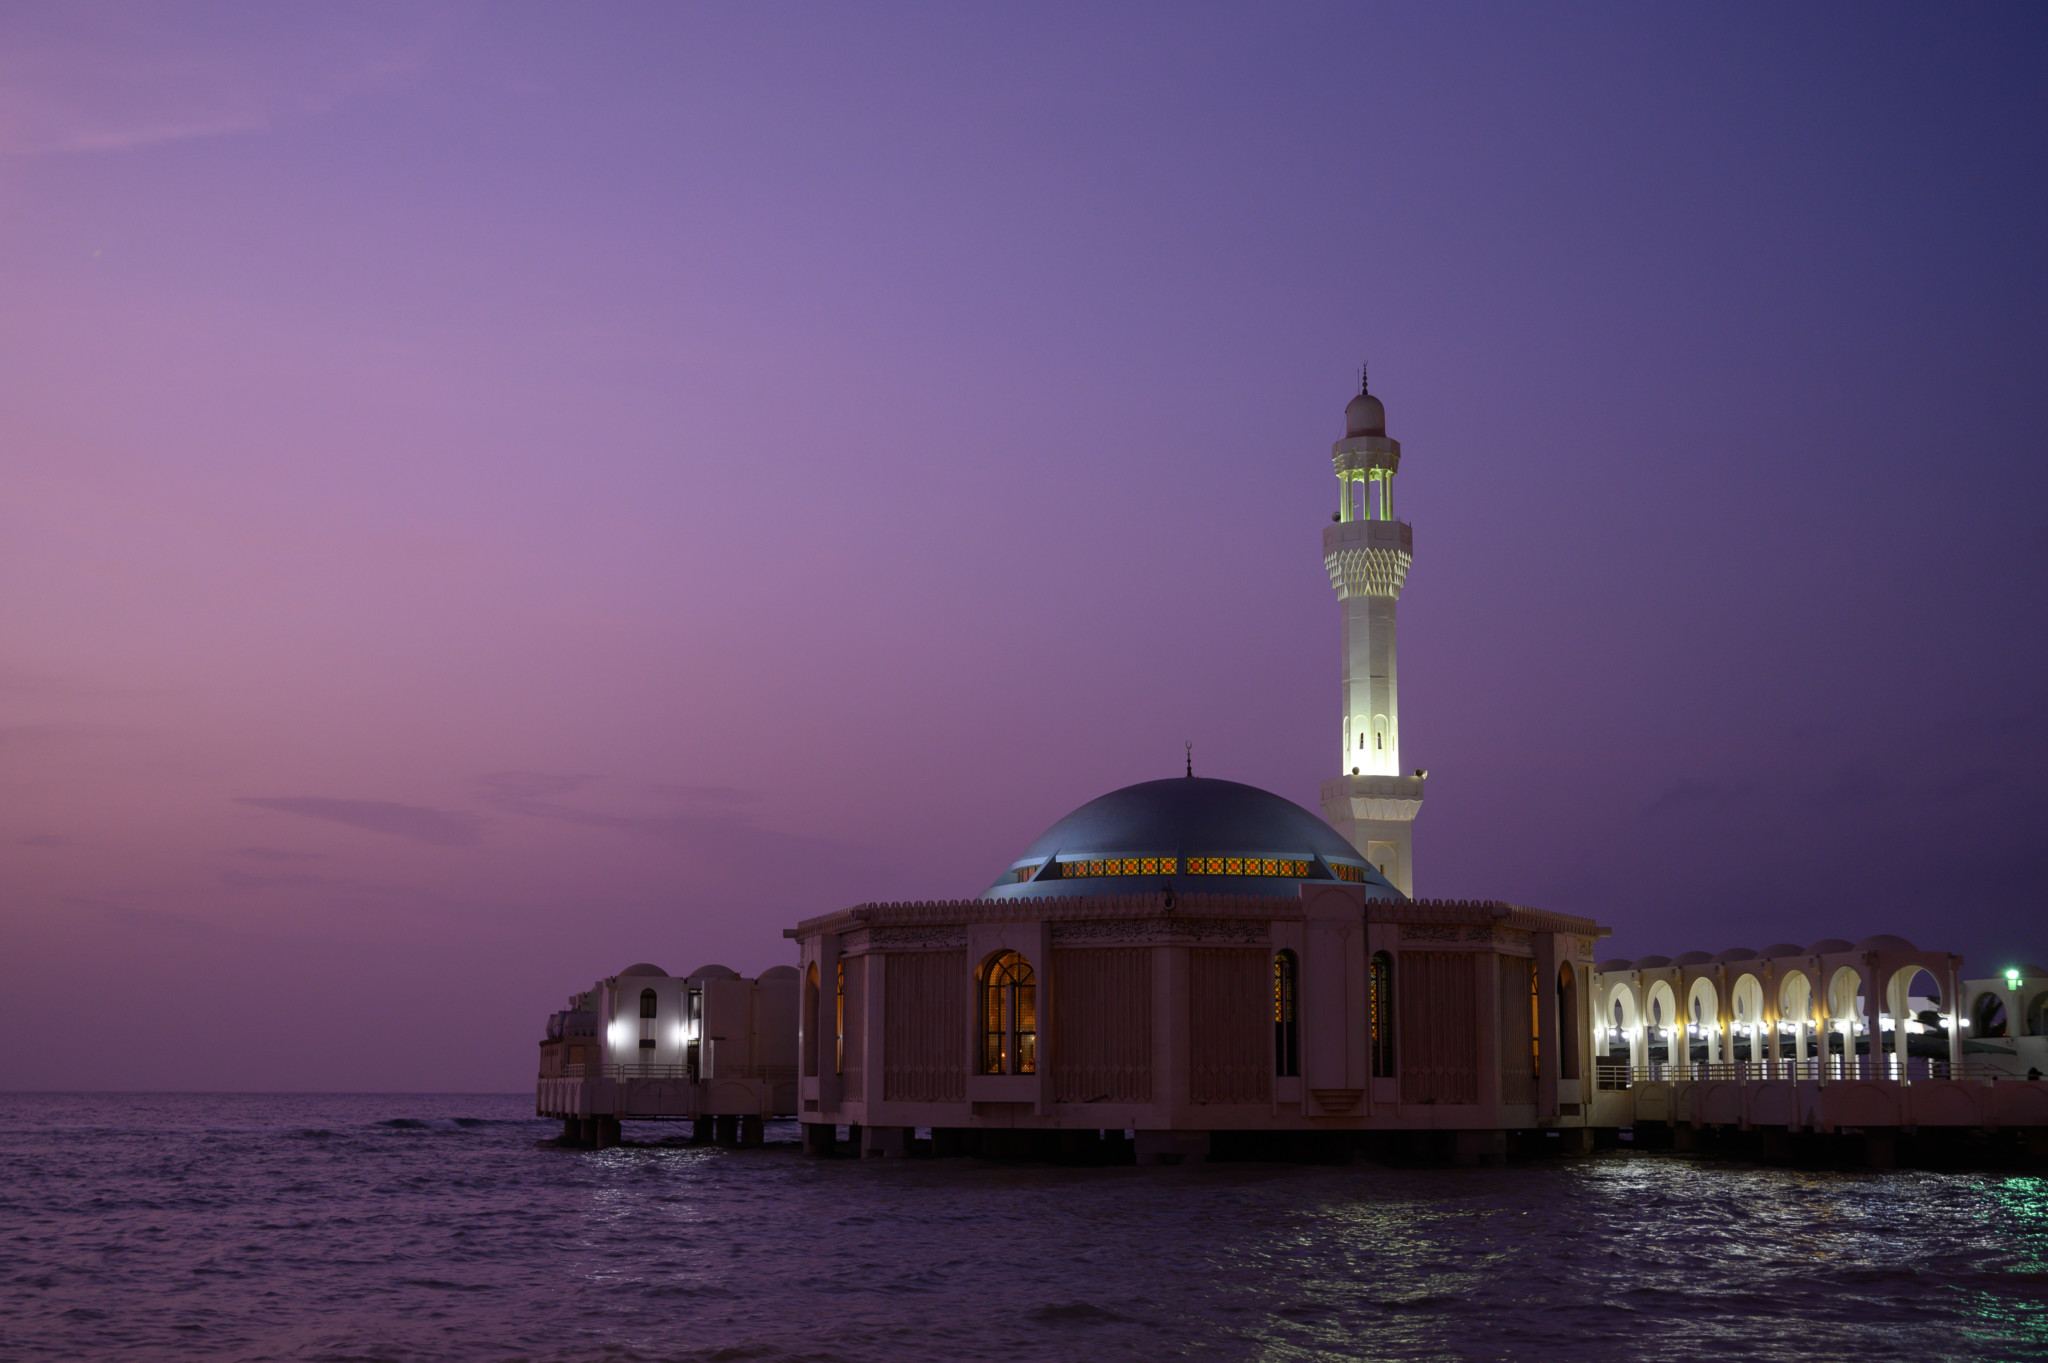 Die Floating Mosque in Jeddah ist eine der wichtigsten Sehenswürdigkeiten der Stadt